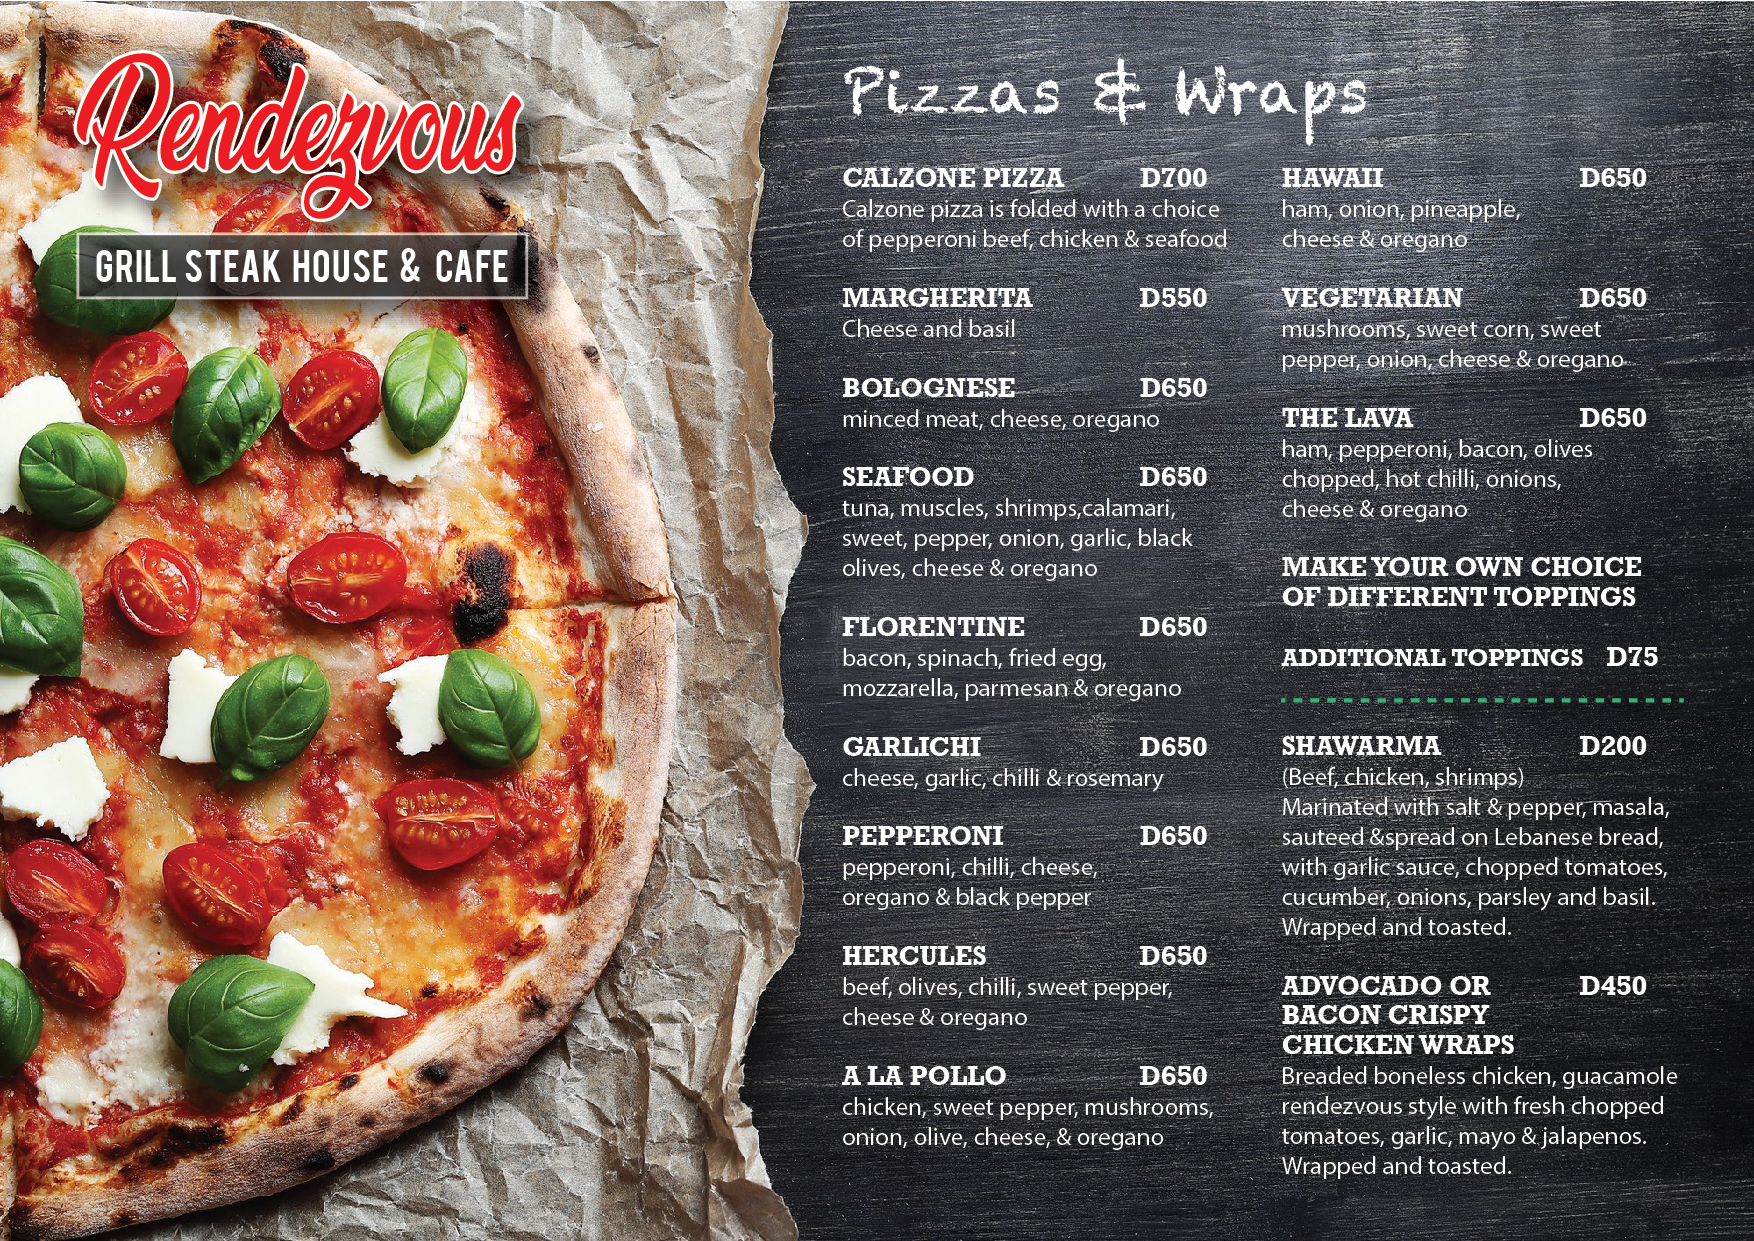 RendezVous Gambia Pizza menu